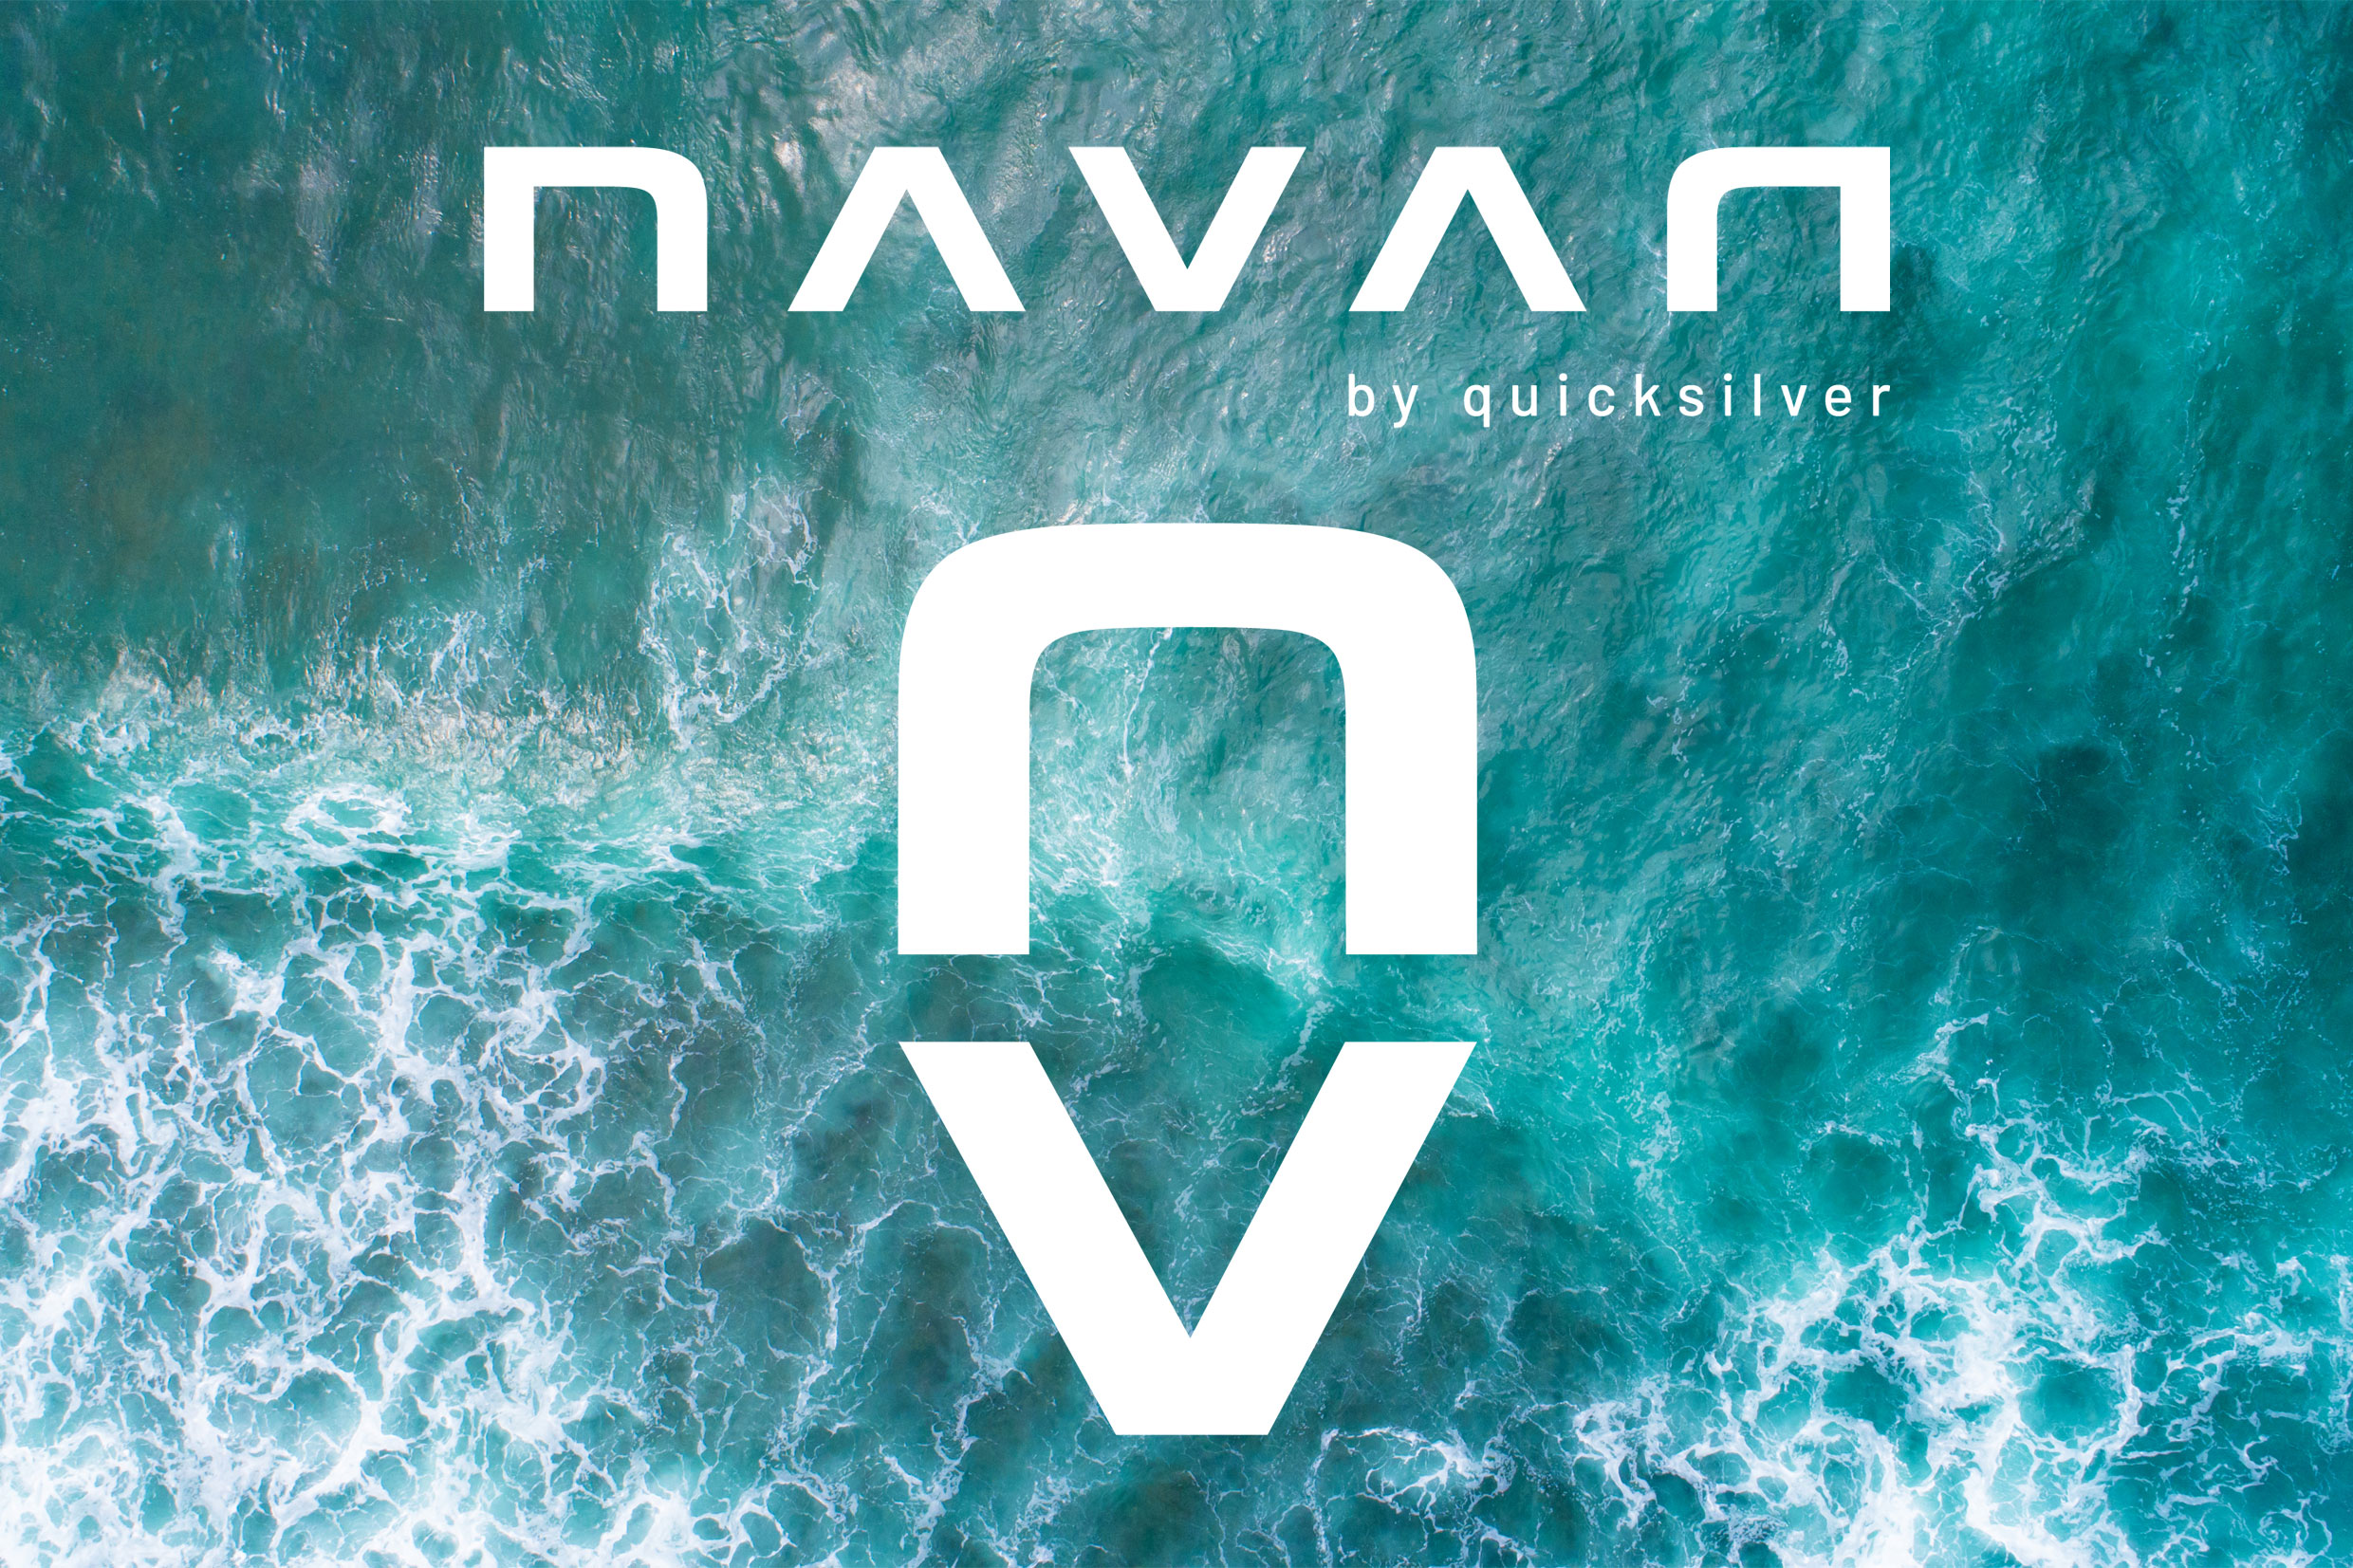 Bienvenue chez NAVAN, la toute nouvelle marque de bateaux haut de gamme imaginée pour vous créer des souvenirs